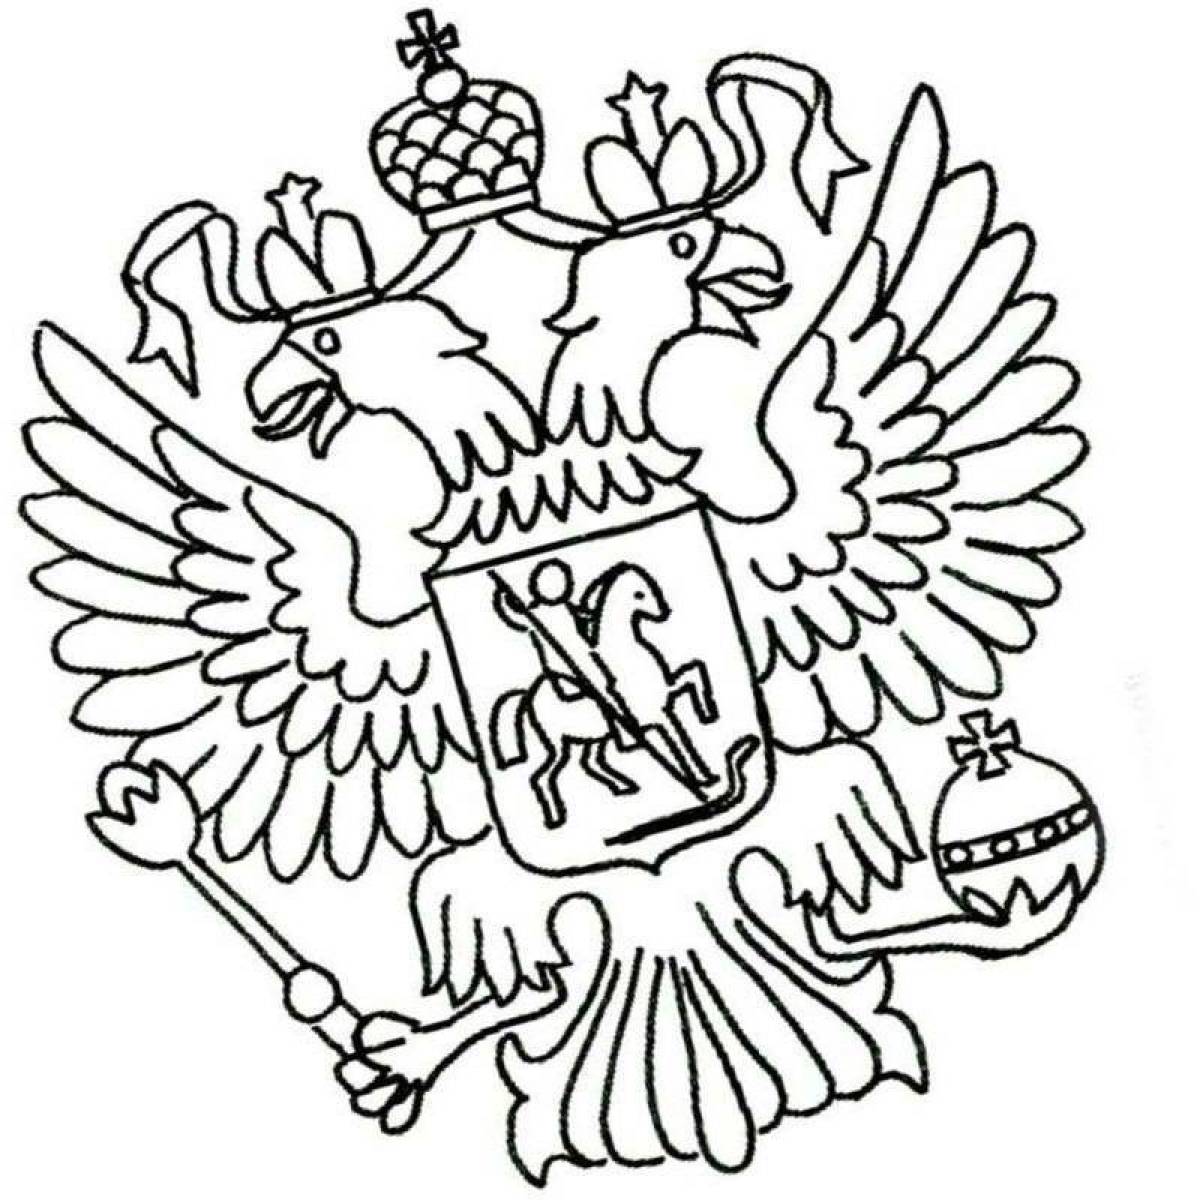 Флаг и герб россии рисунок детский